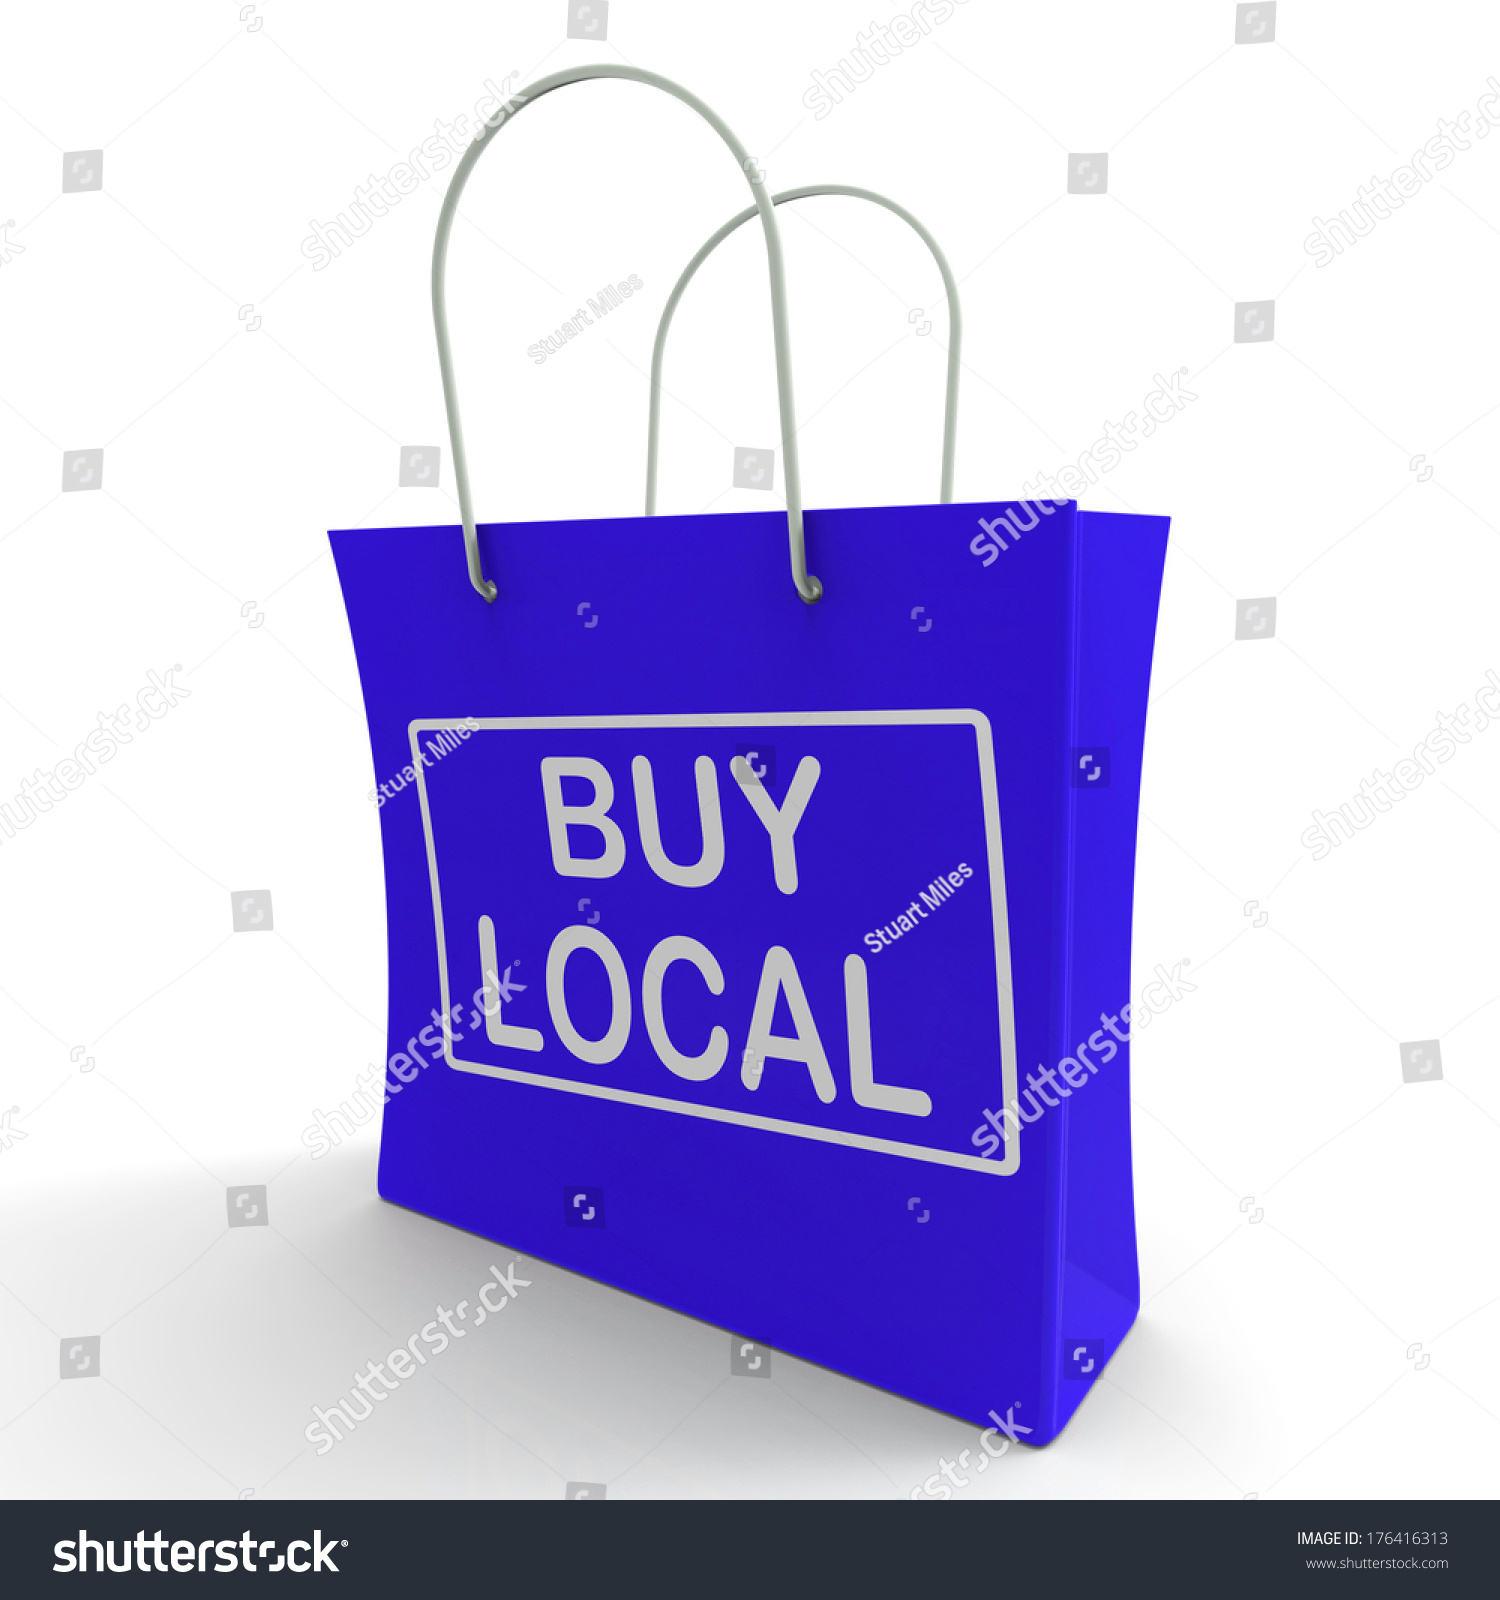 Buy Local Shopping Bag Stock Illustration 176416313 - Shutterstock